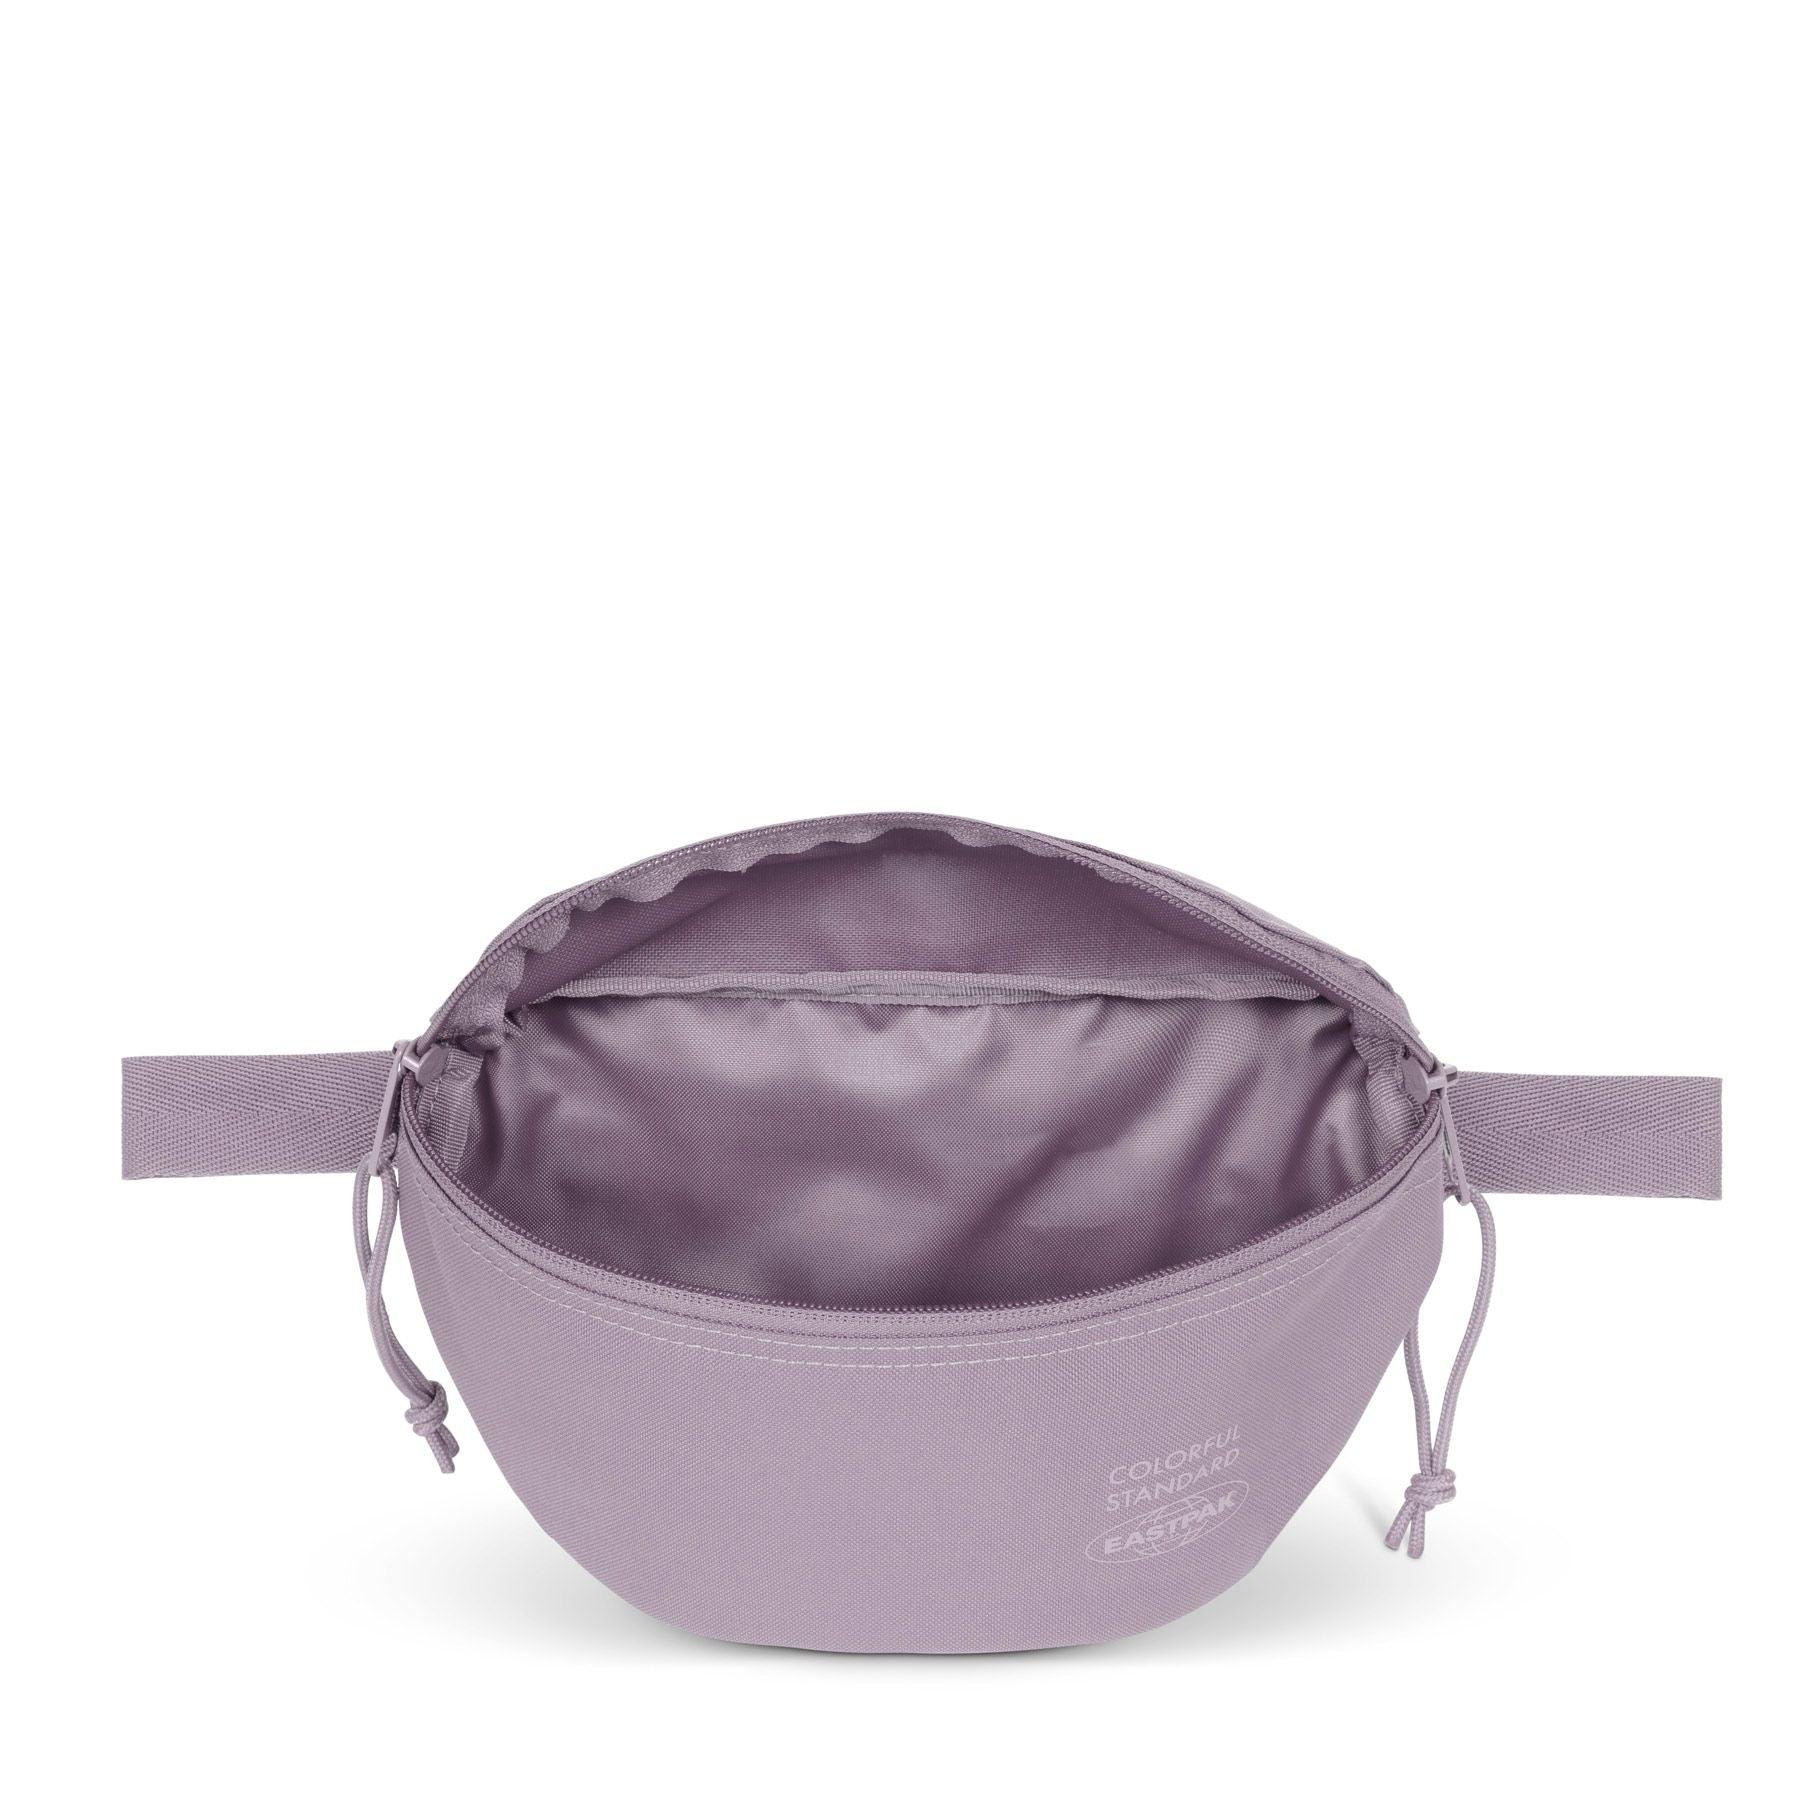 Riñonera Colorful Standard x Eastpak Springer Purple Haze - ECRU